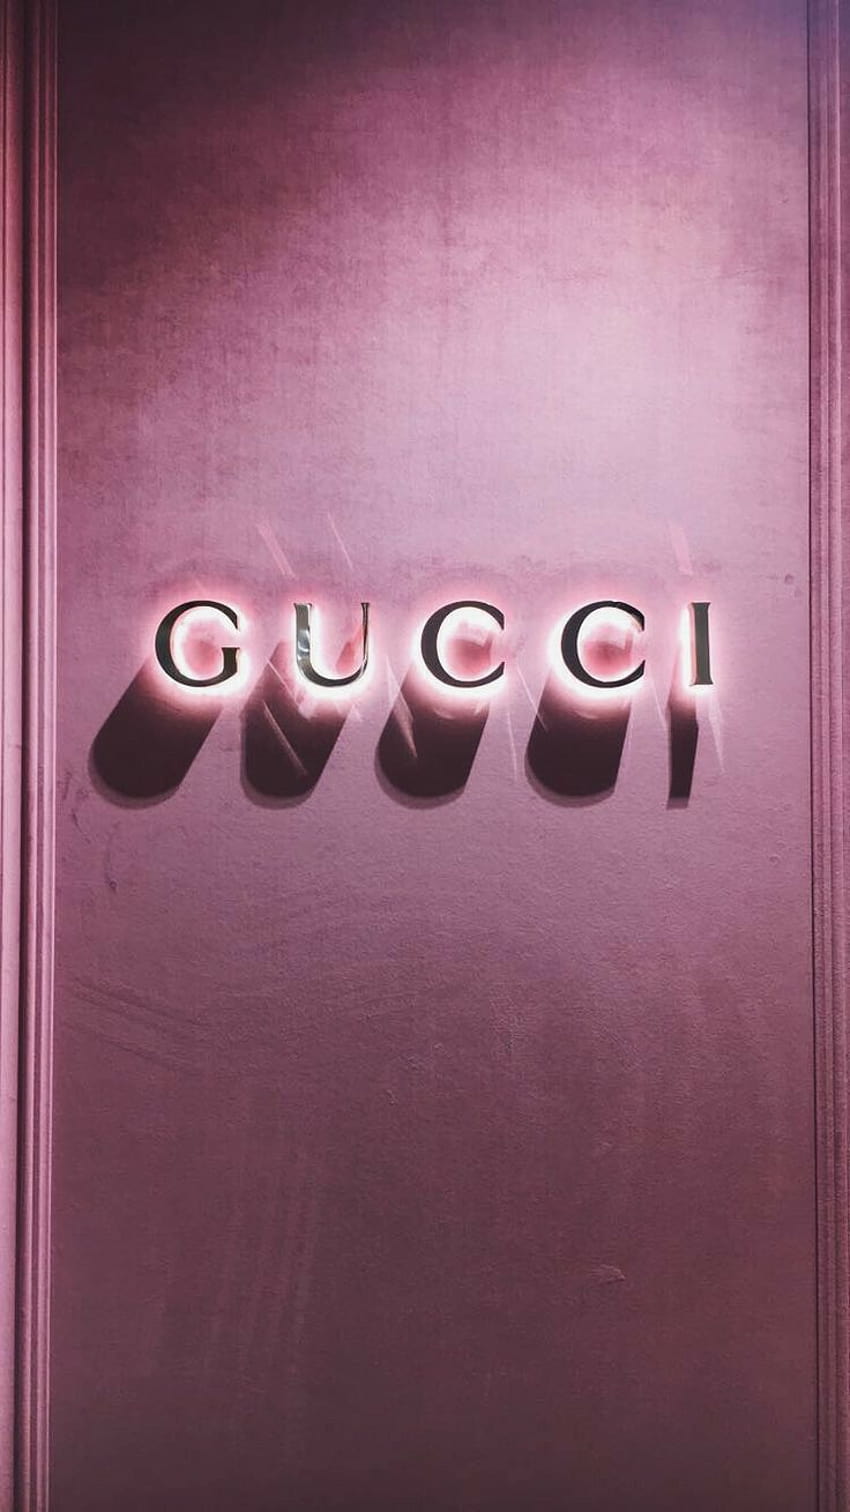 Nếu bạn đang tìm kiếm một nền tảng tuyệt đẹp để làm hình nền cho điện thoại của mình, Gucci aesthetic backgrounds chính là lựa chọn hoàn hảo. Với những gam màu nổi bật cùng với logo của thương hiệu Gucci, chắc chắn sẽ mang đến cho bạn một cái nhìn tuyệt vời và độc đáo.